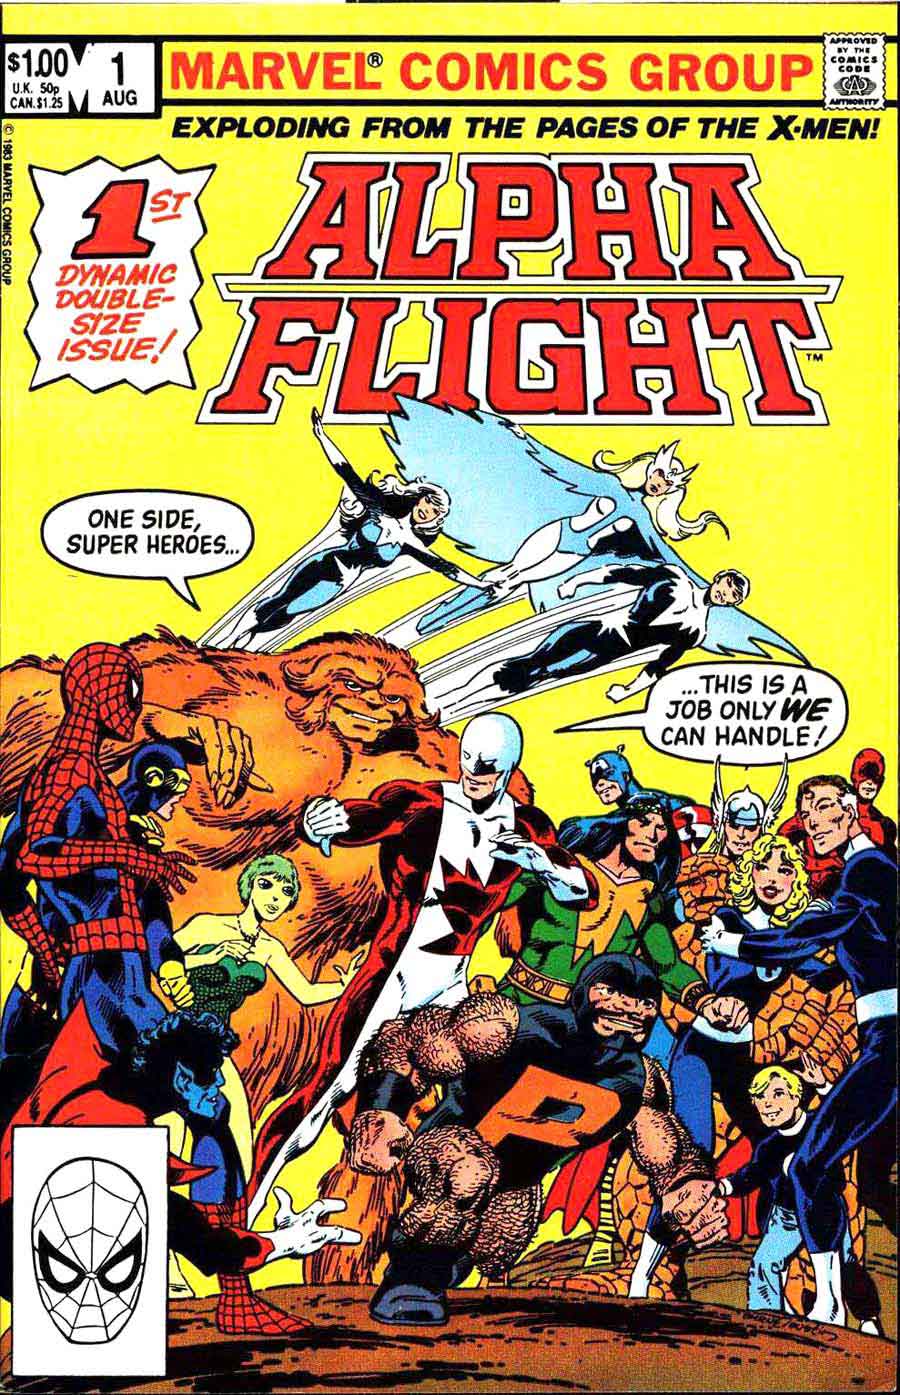 Alpha Flight v1 #1 marvel comic book cover art by John Byrne